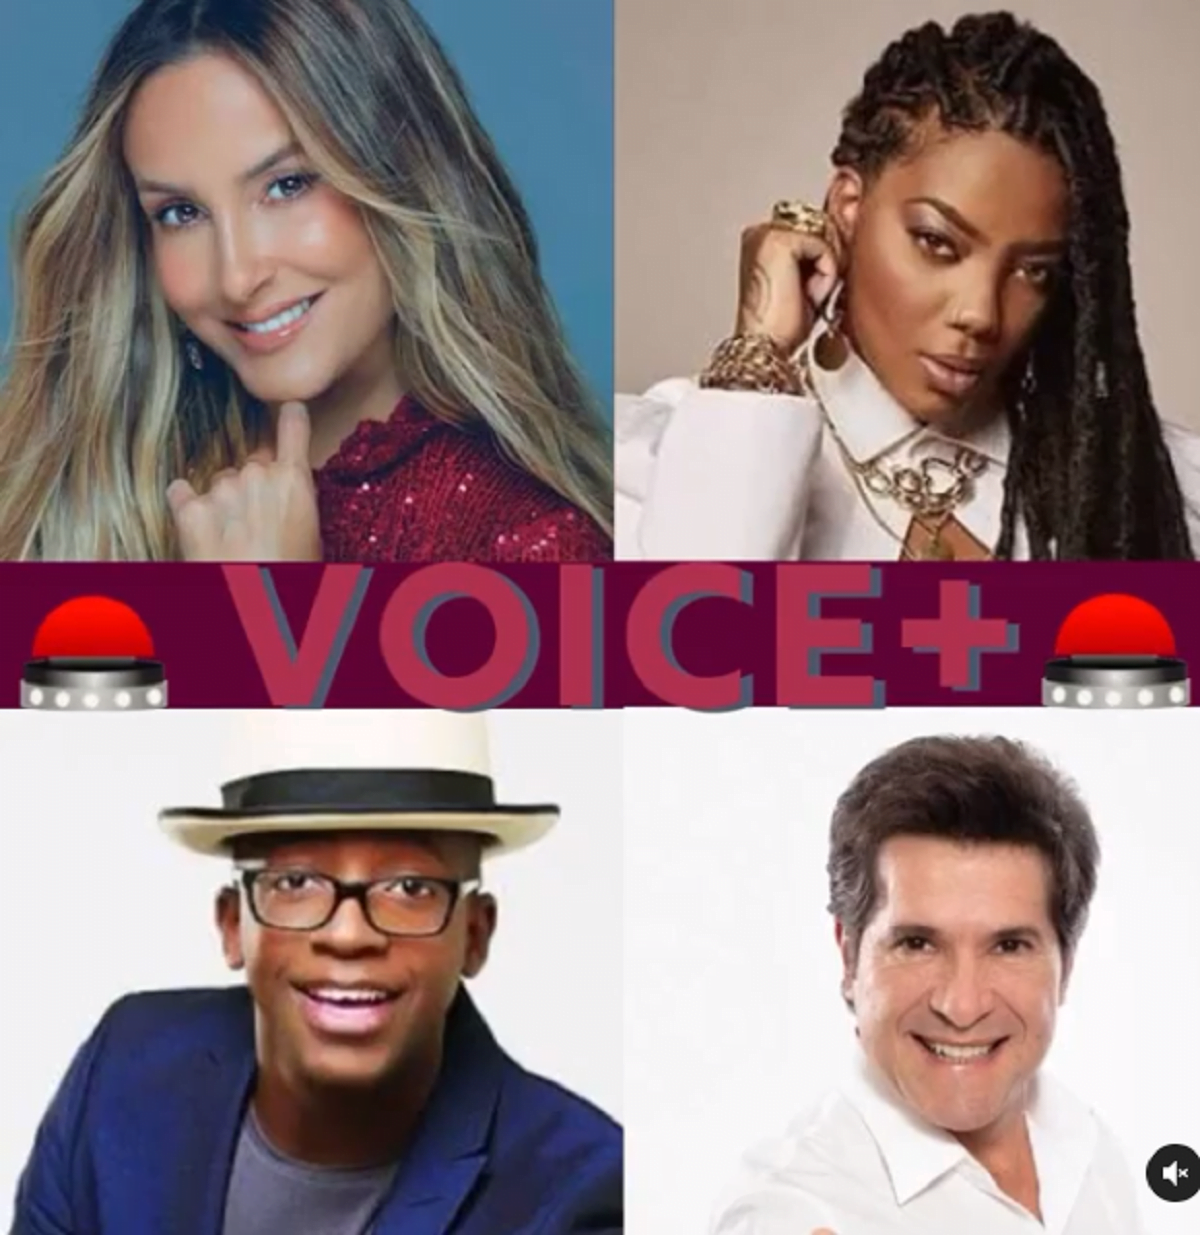 Jurados do The Voice + (Foto: Reprodução) Anitta